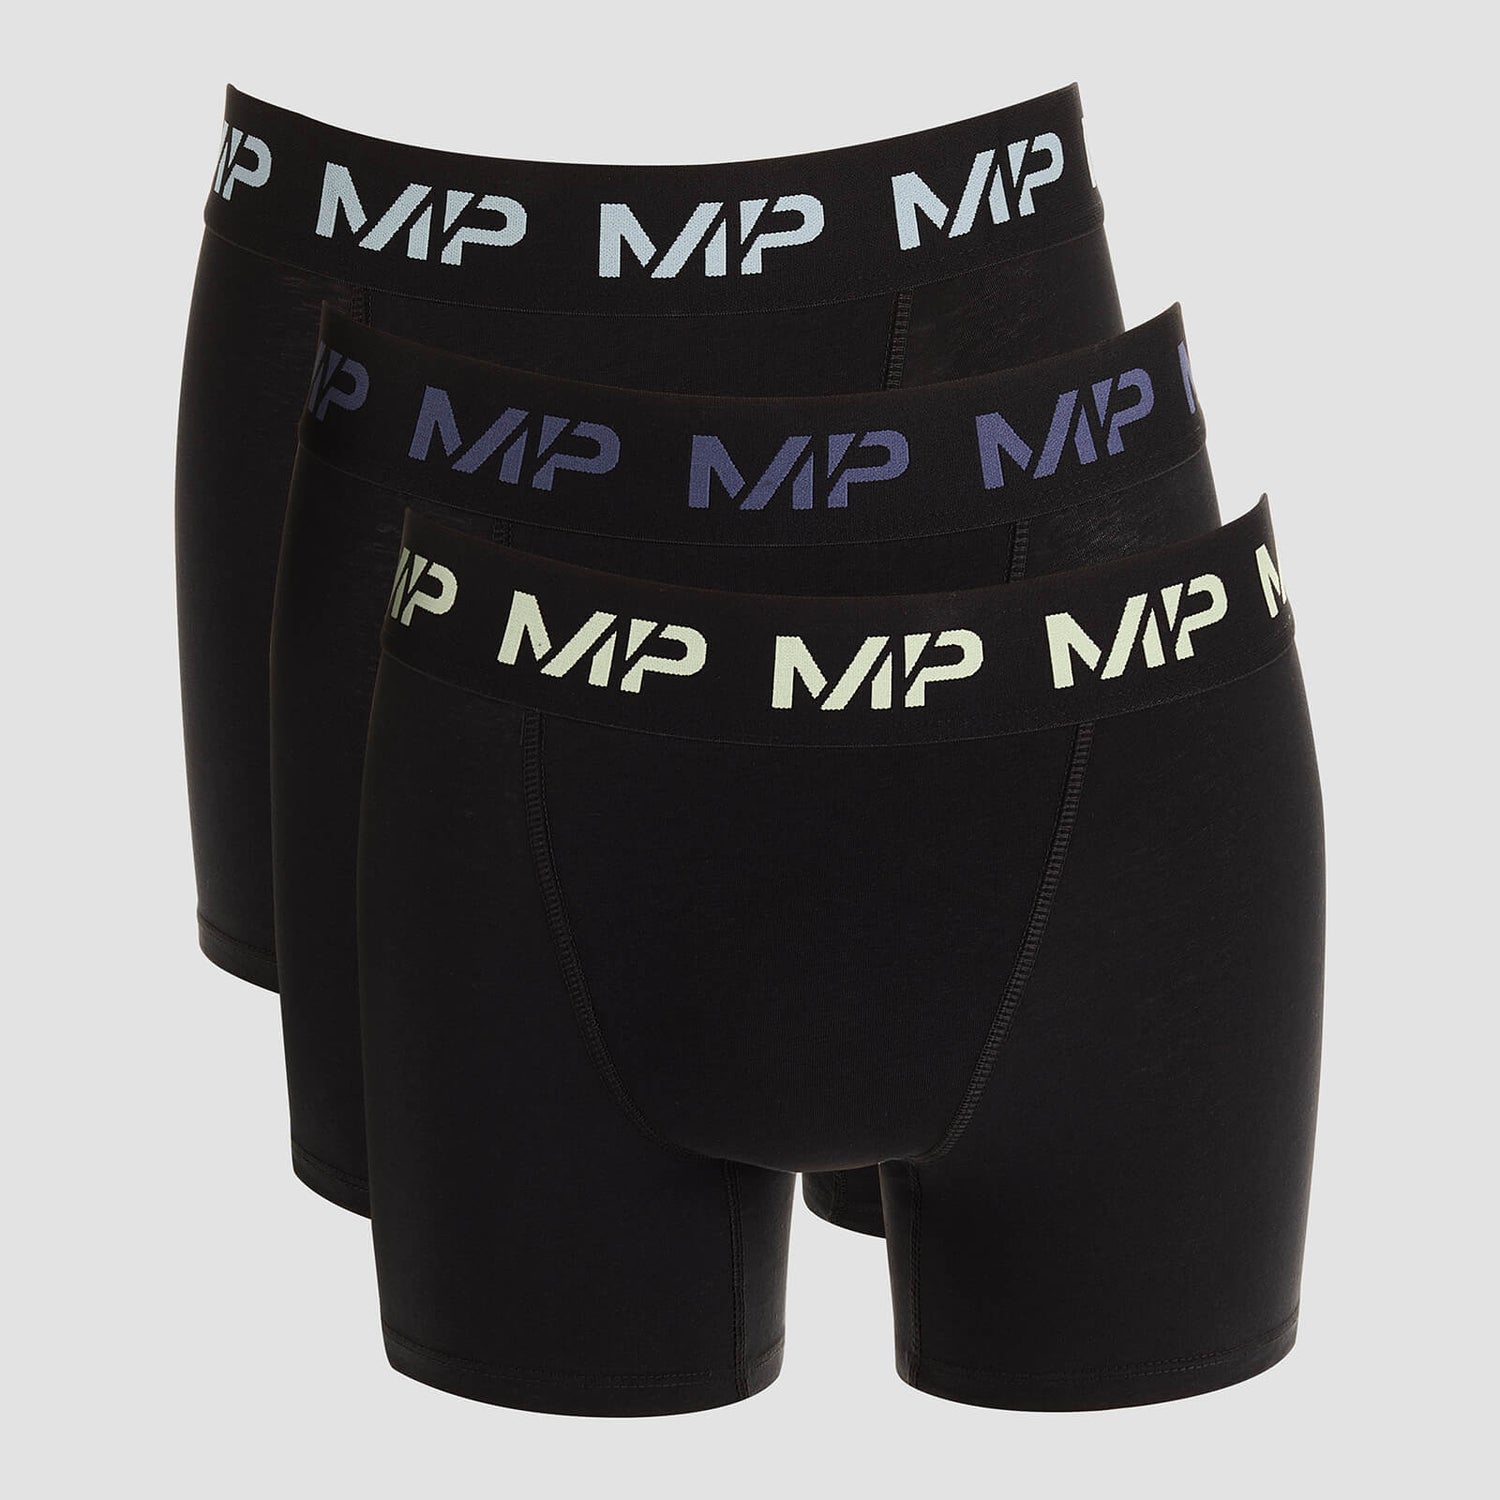 Bóxeres con logotipos de color para hombre de MP (paquete de 3) - Negro/Verde escarcha/Azul acero/Azul hielo - XXS